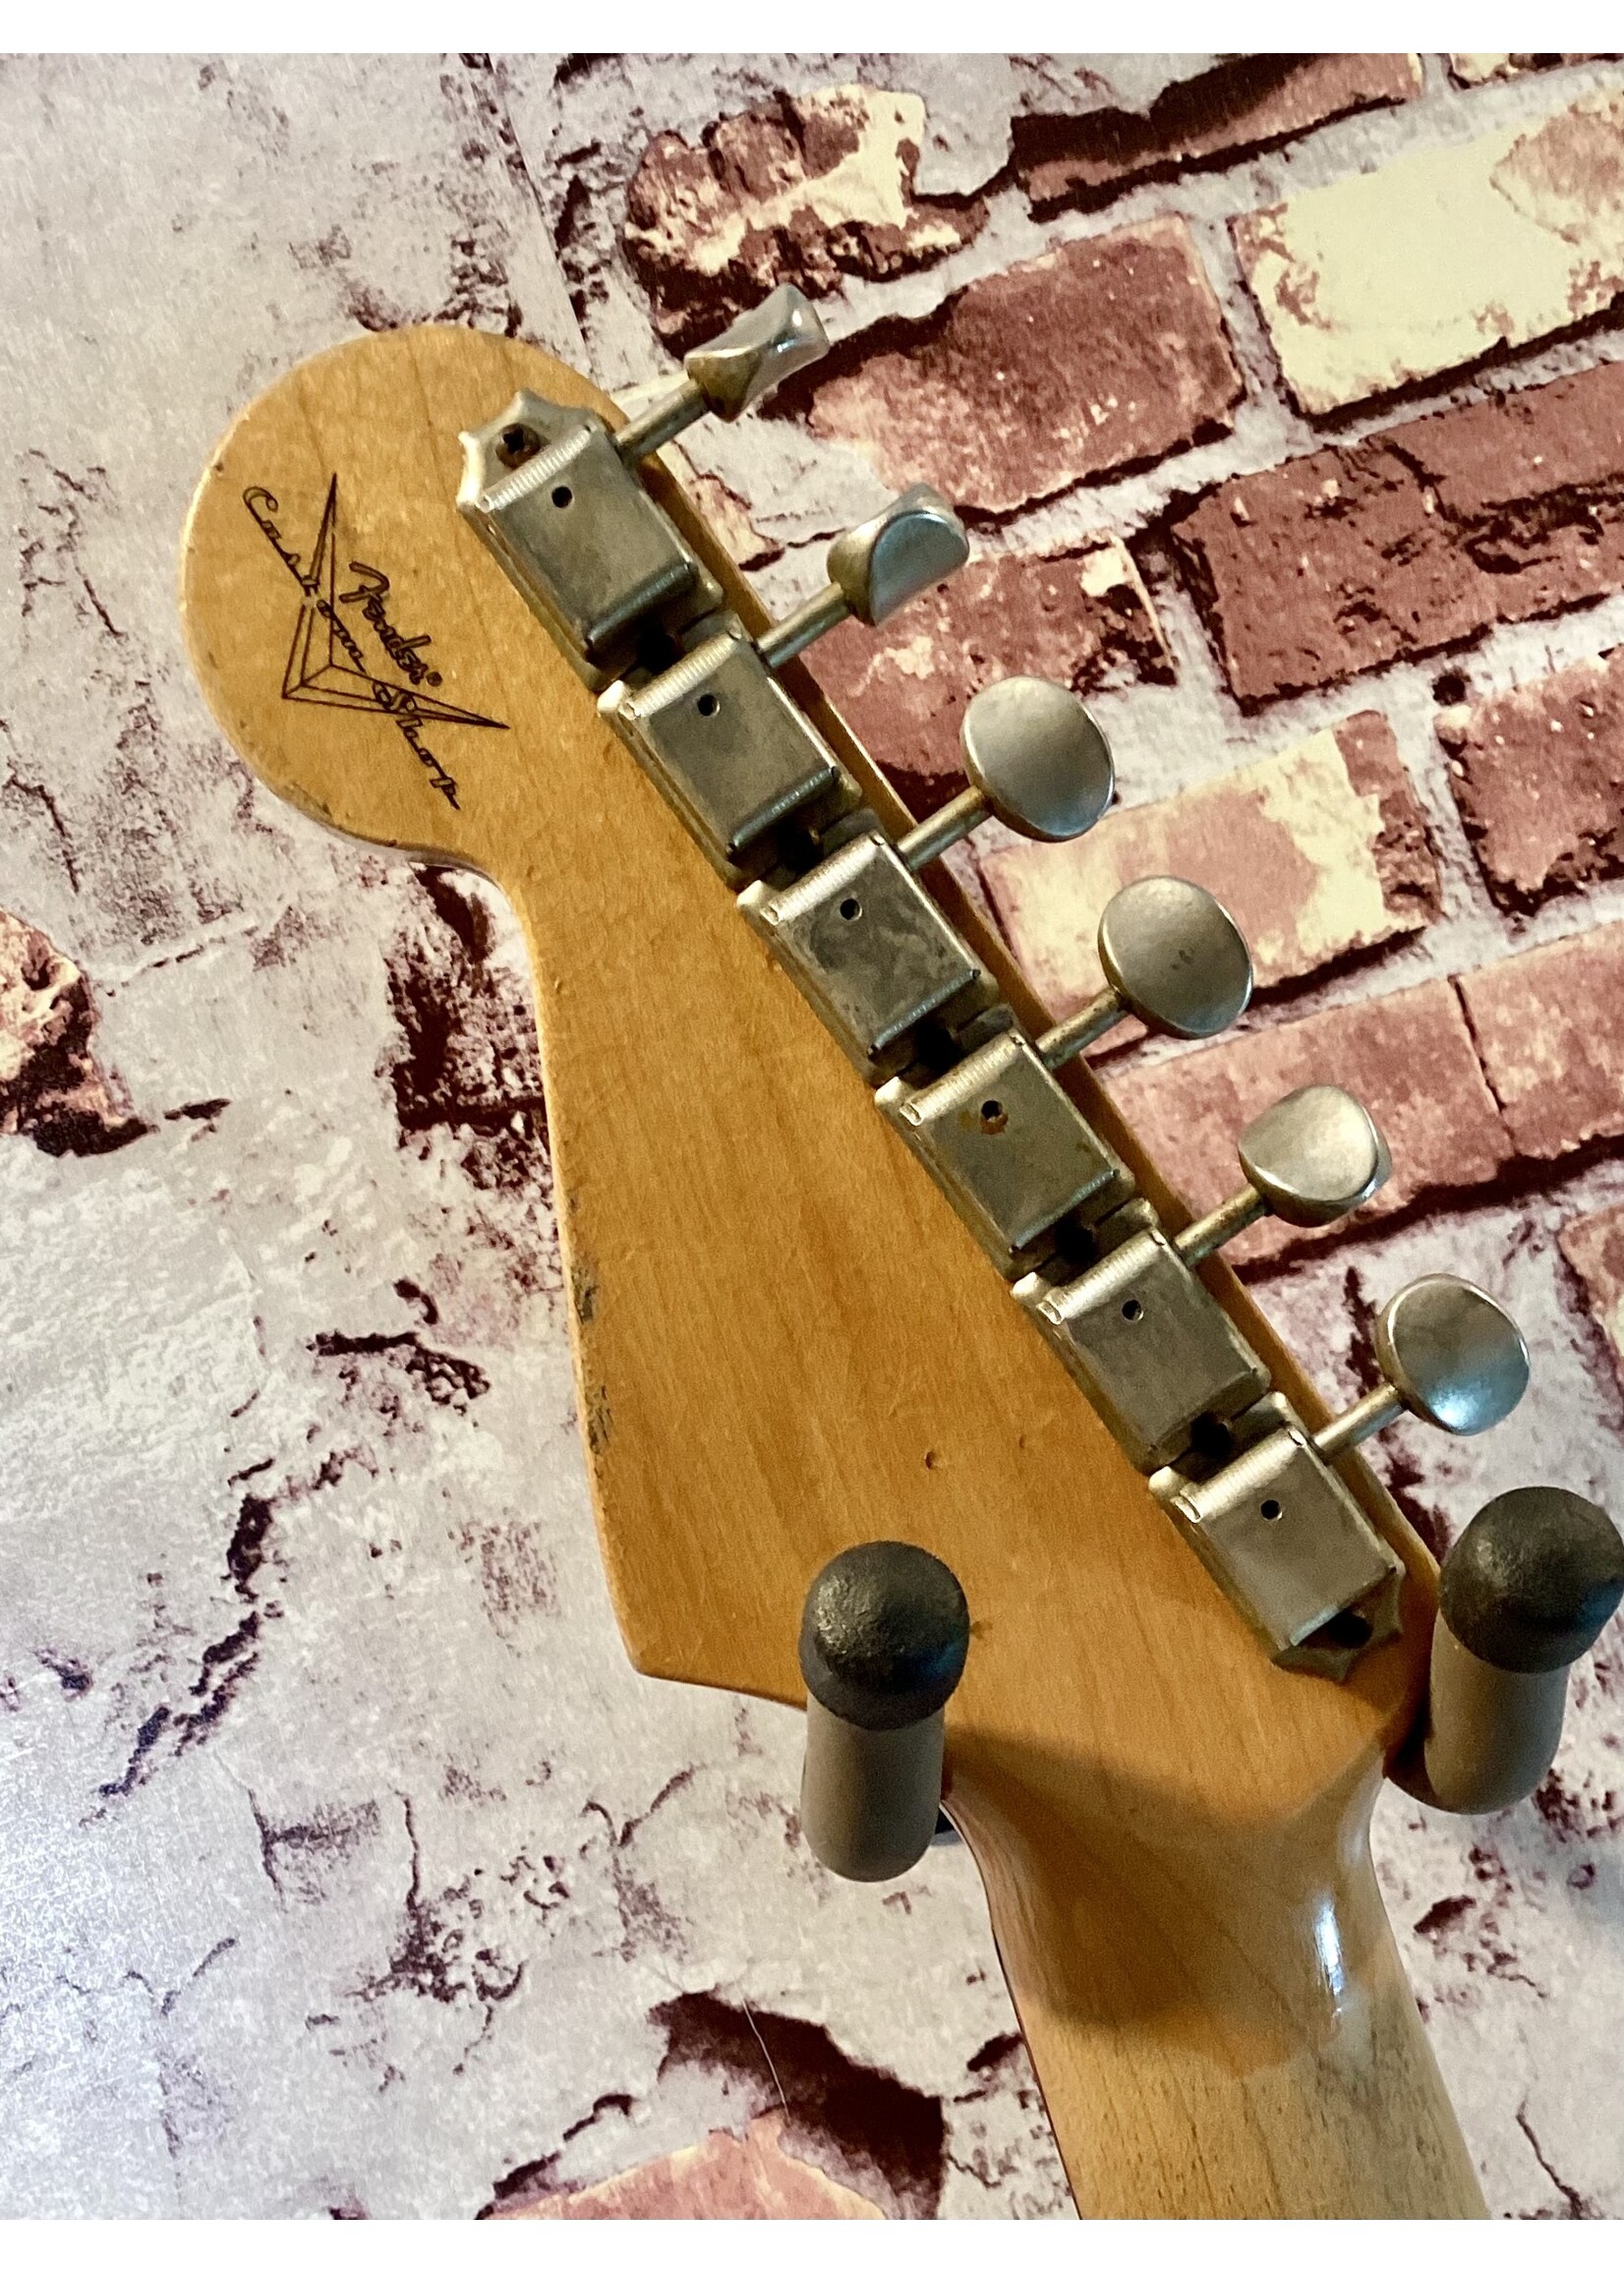 Fender Custom Shop Stratocaster 1960's relic white - 2006